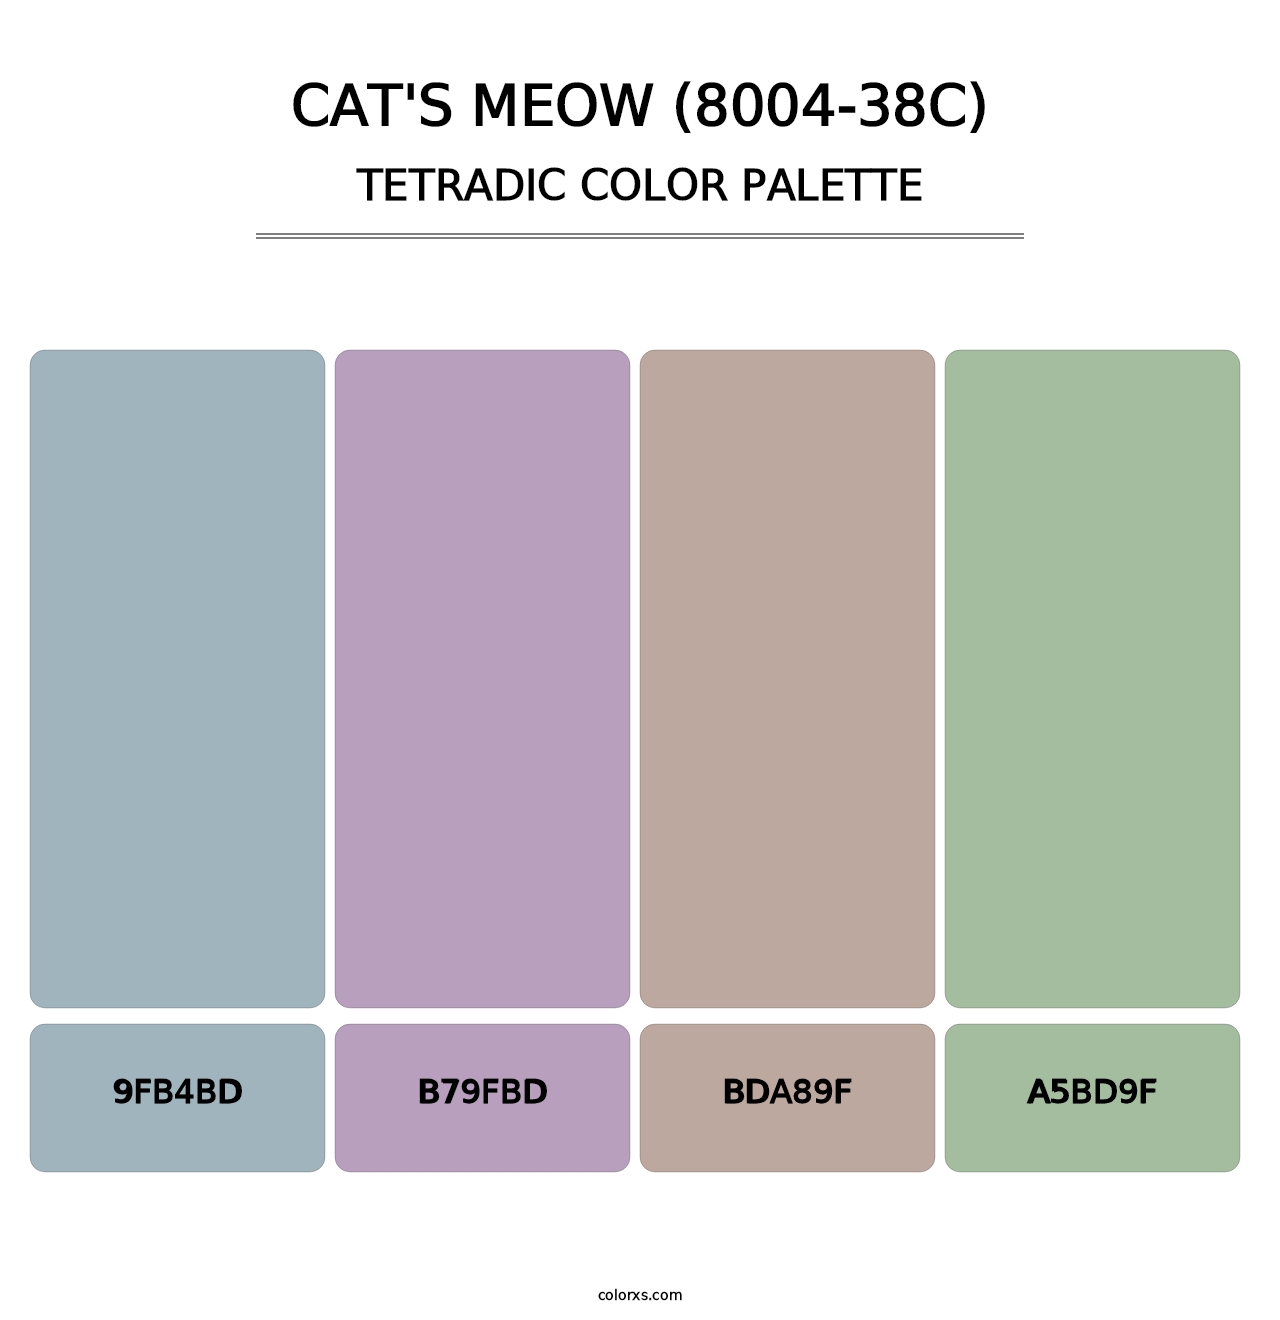 Cat's Meow (8004-38C) - Tetradic Color Palette